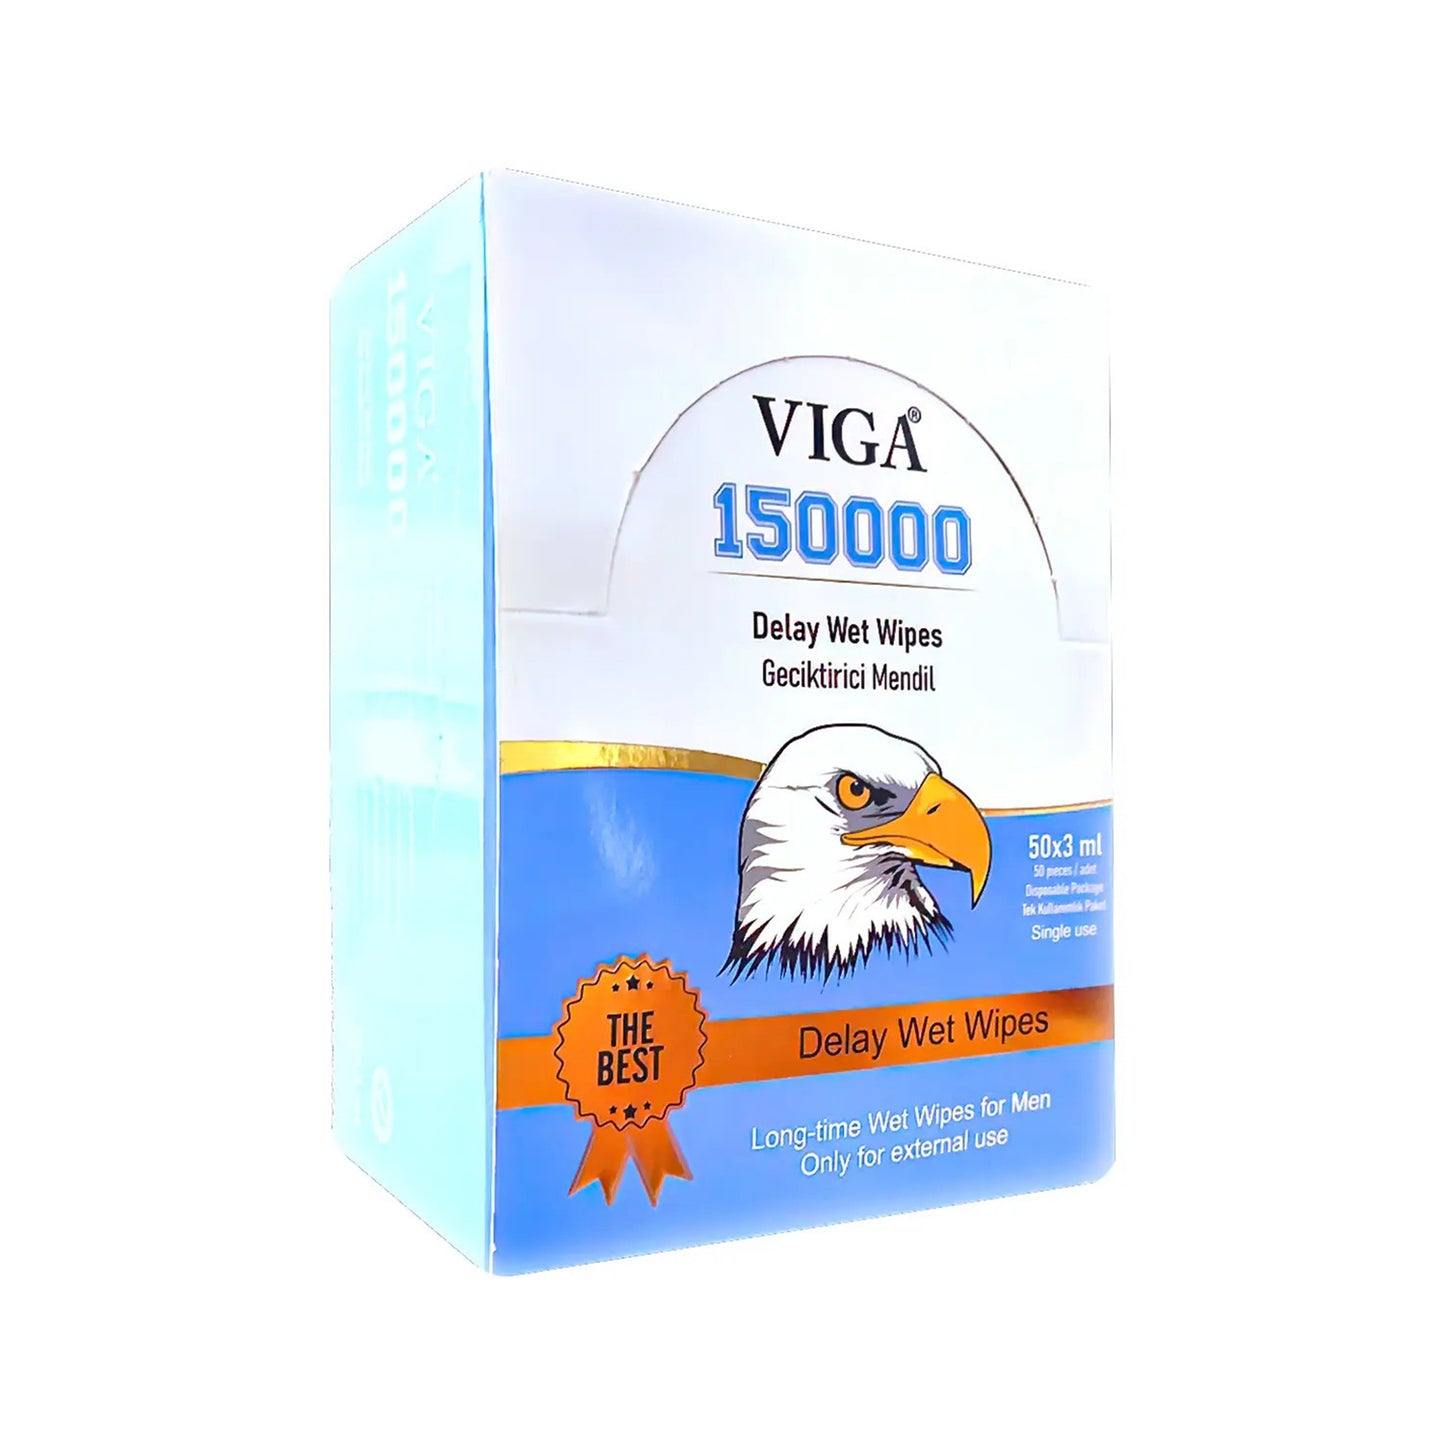 VIGA 150000 MARAMICE - 10 kom. 1600 RSD